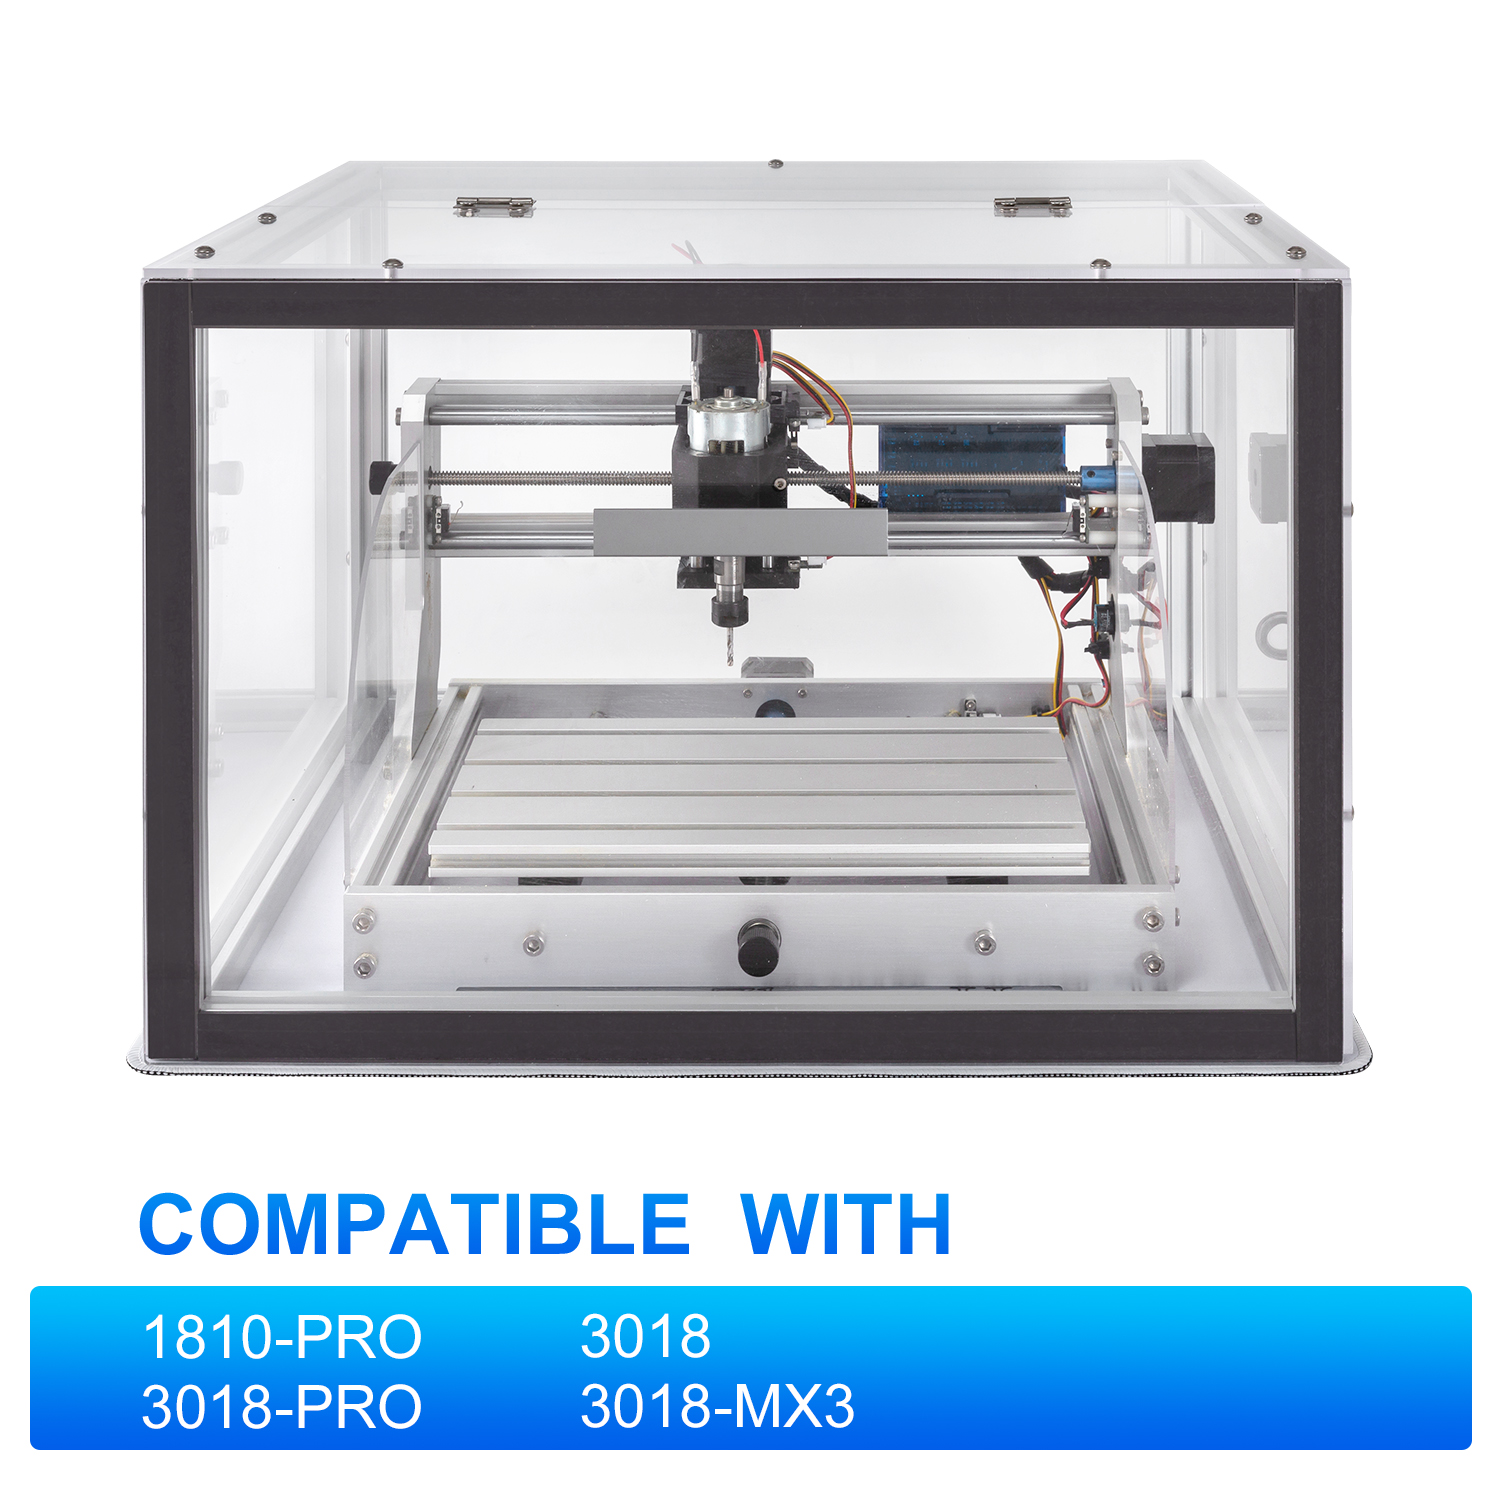 Acrylic CNC Enclosure 510 x 455 x 335 mm Compatible with CNC Router Machine 3018 PRO/3018/3018 MX3/1810 PRO/1610